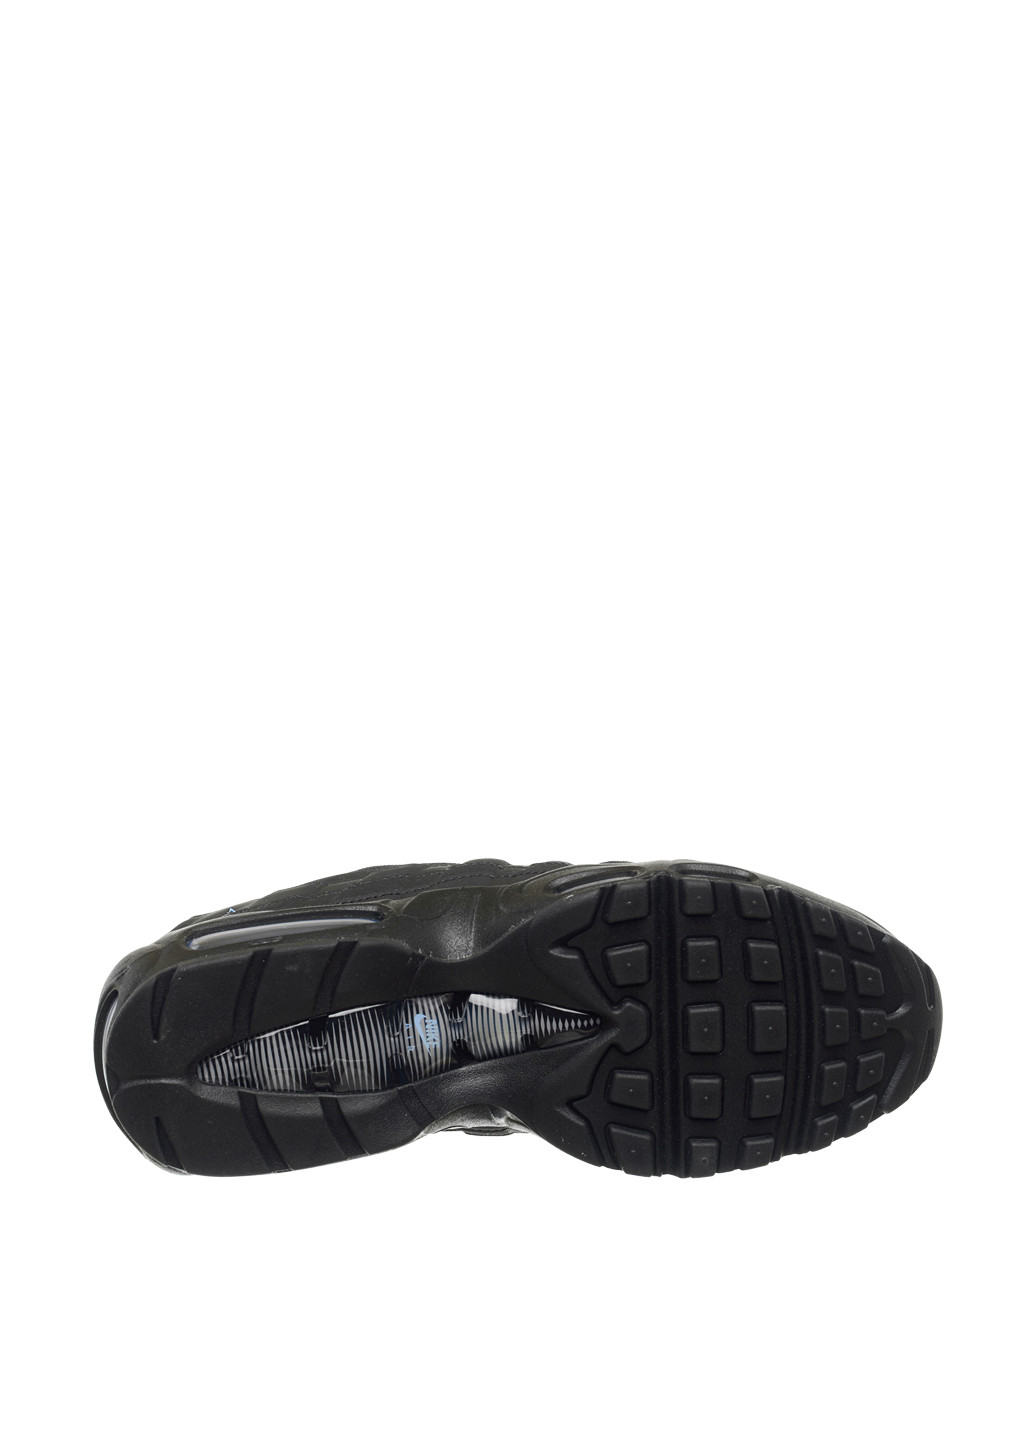 Черные всесезонные кроссовки fj4217-002_2024 Nike Air Max 95